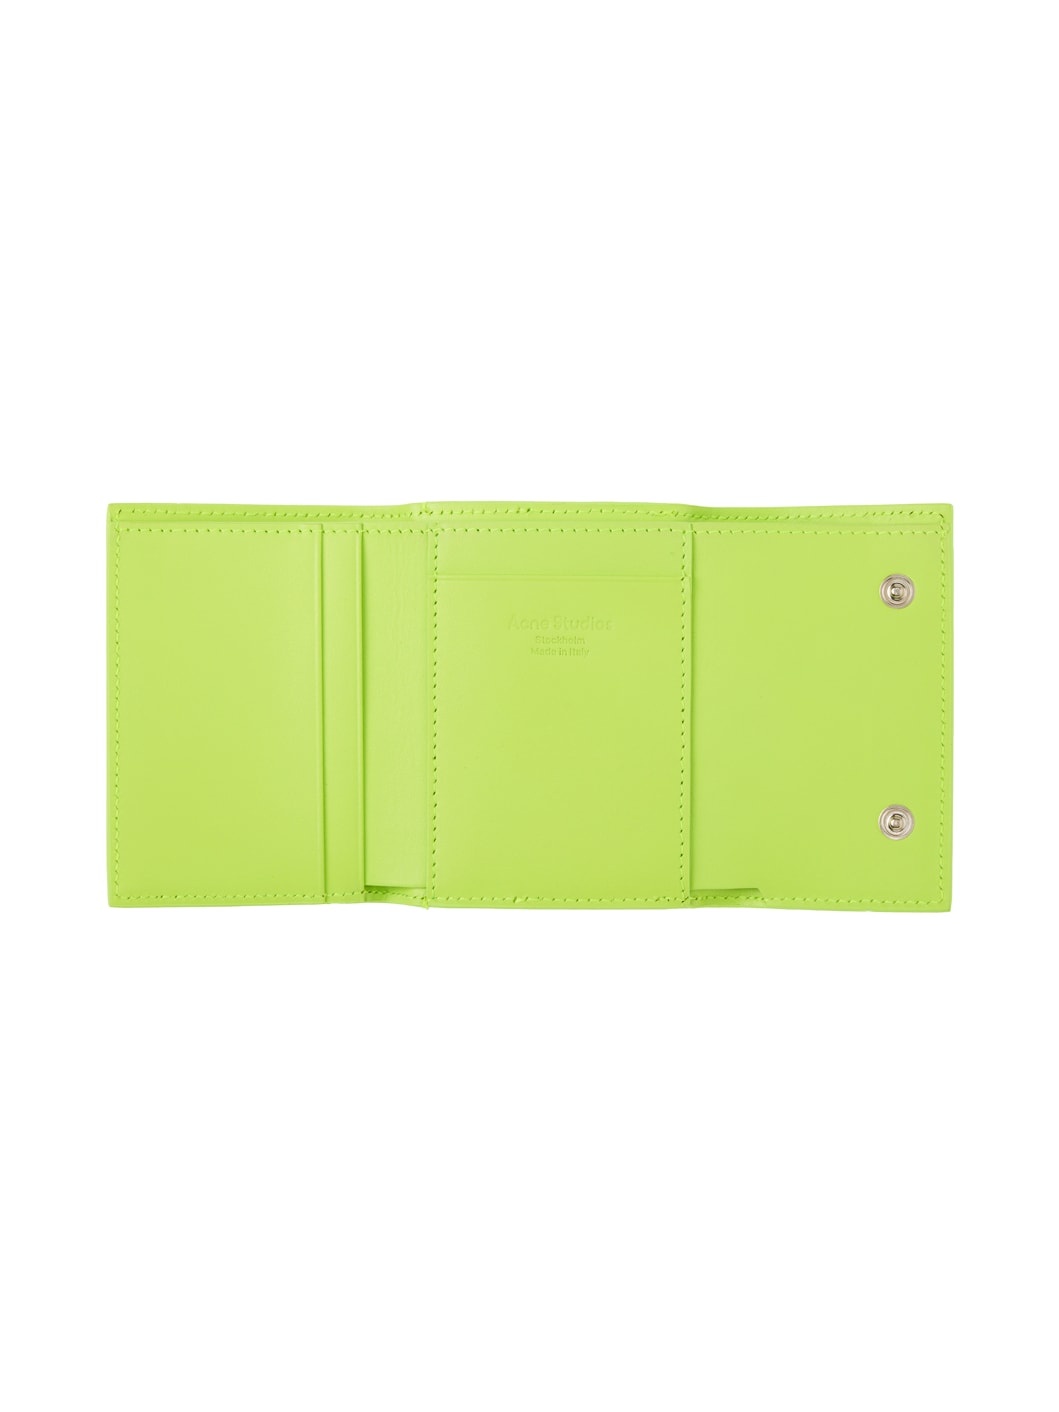 Green Folded Wallet - 3